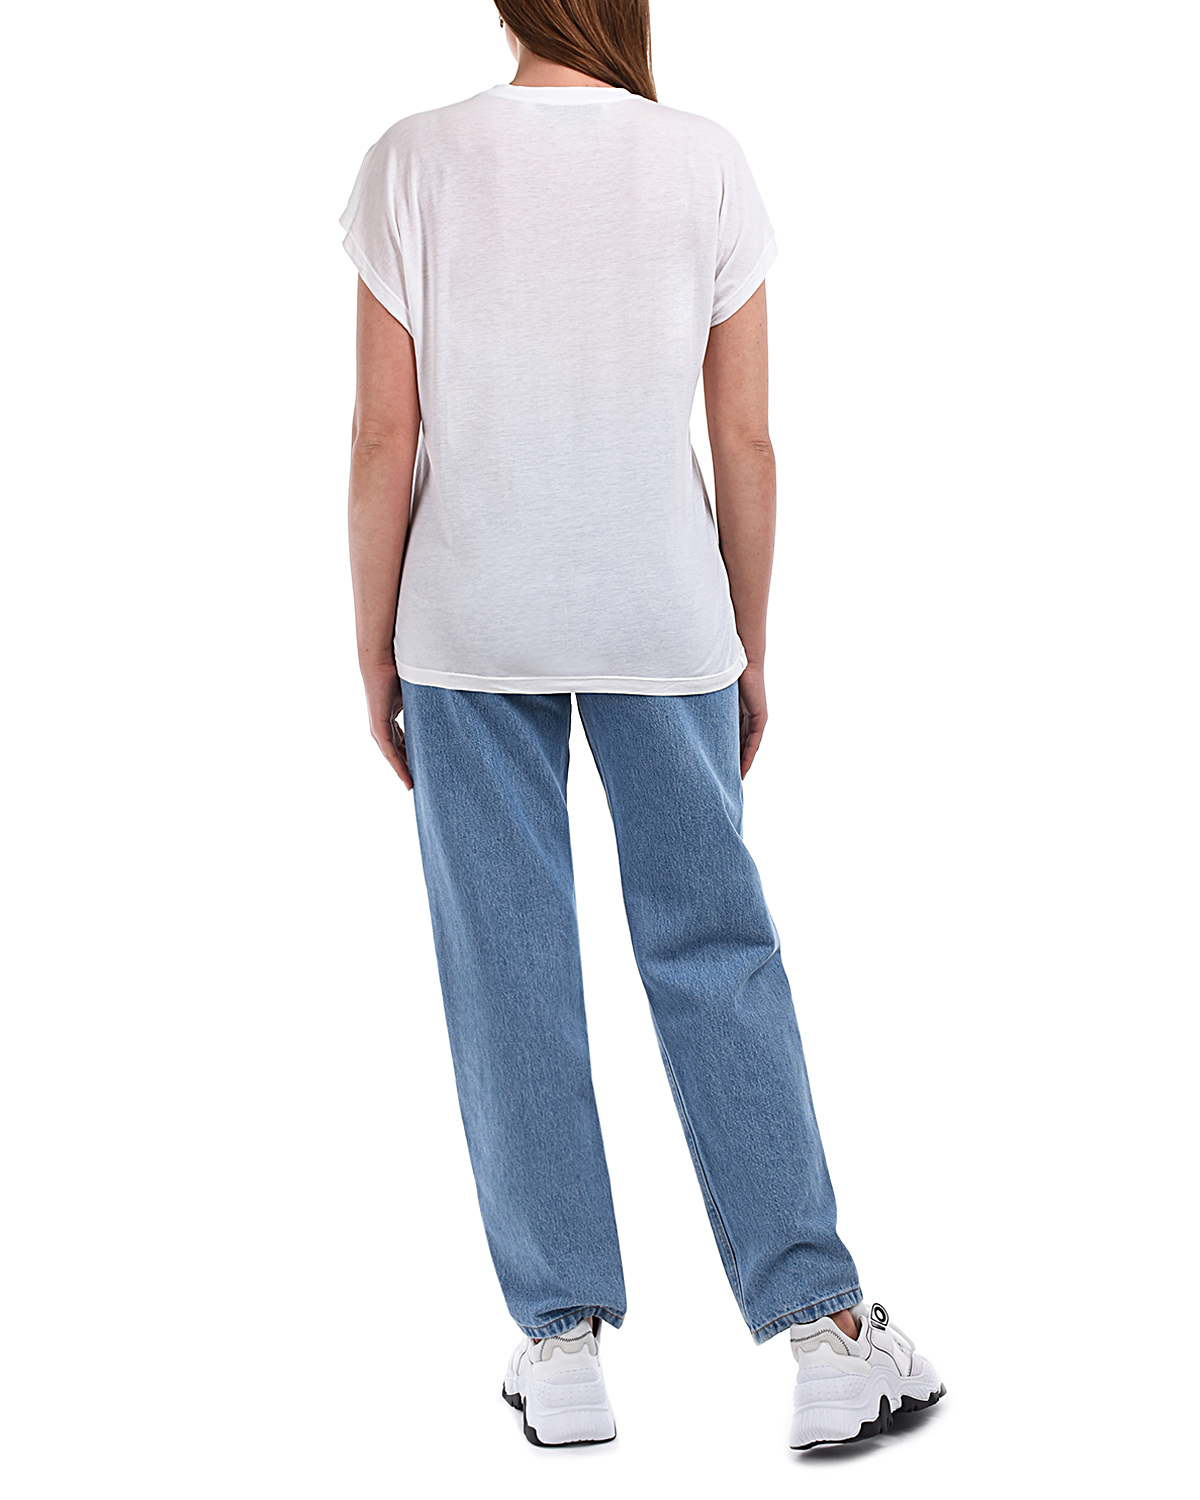 Белая футболка с контрастным принтом IRO, размер 40, цвет белый - фото 4